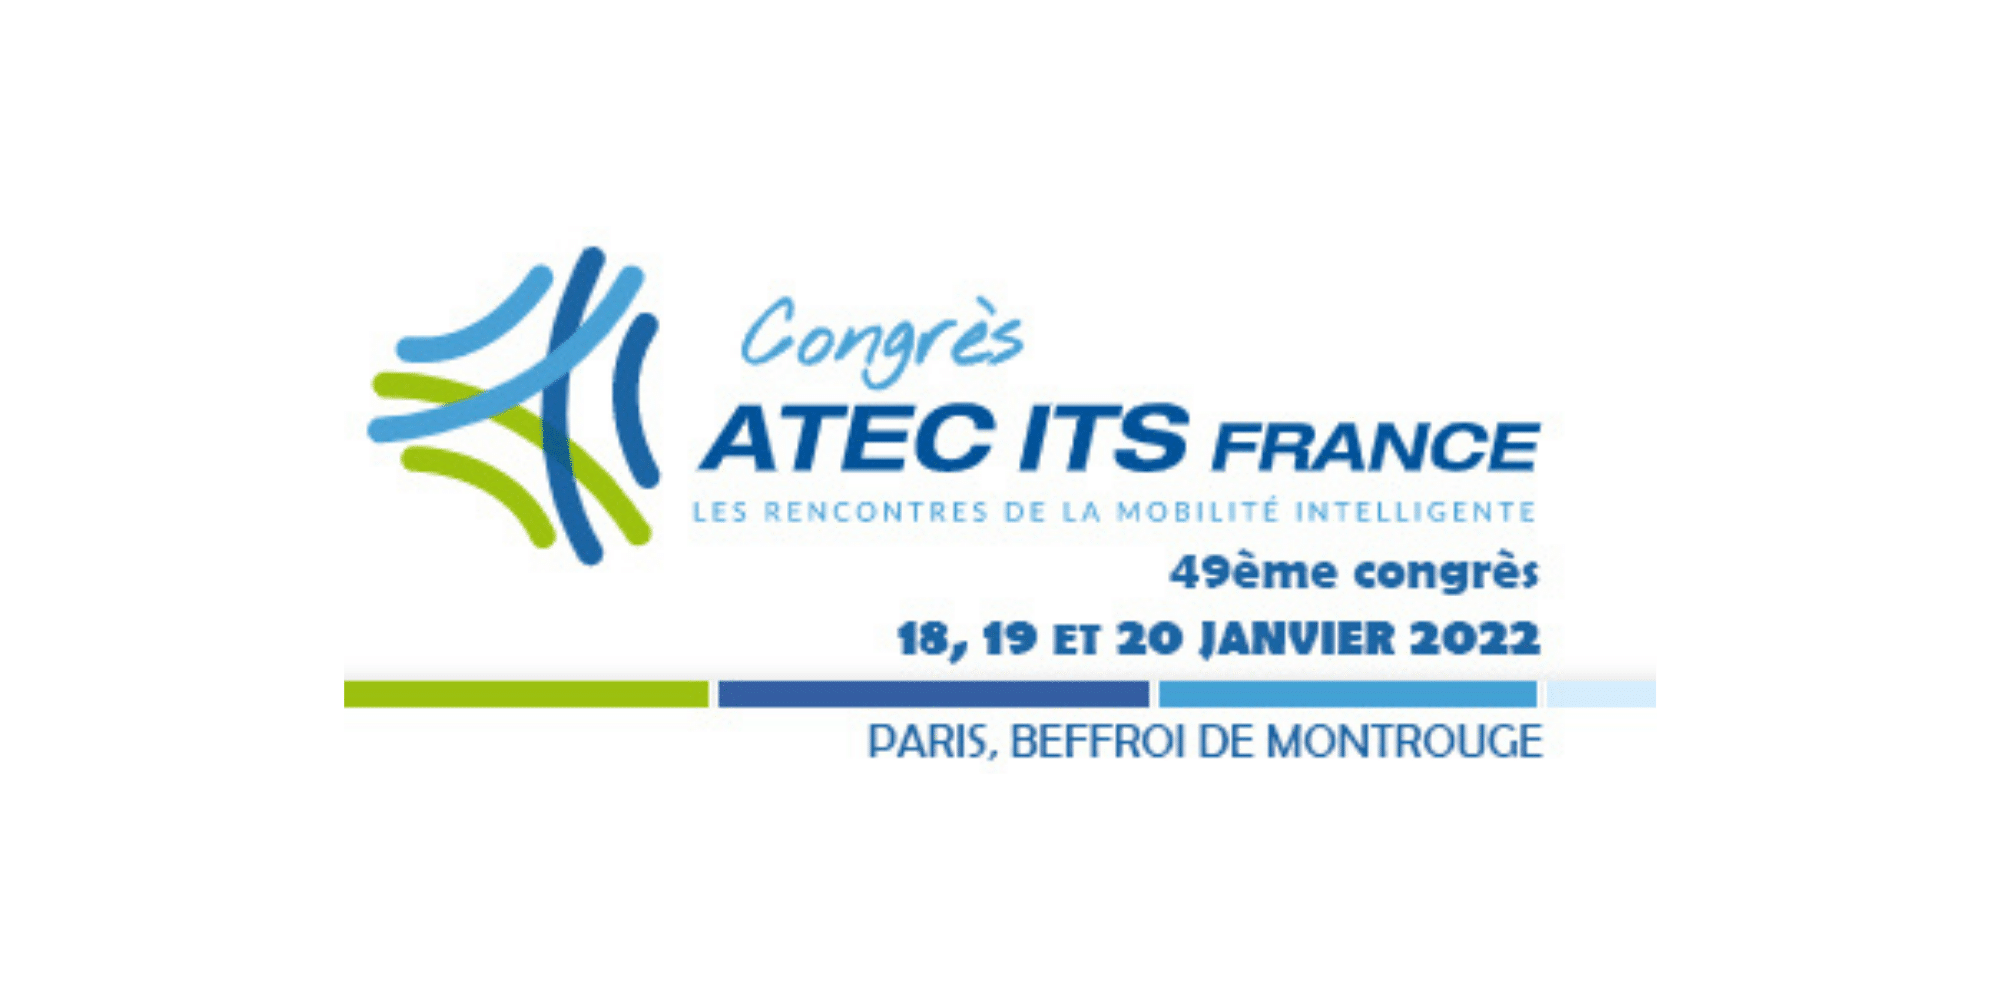 Congrès ATEC ITS France